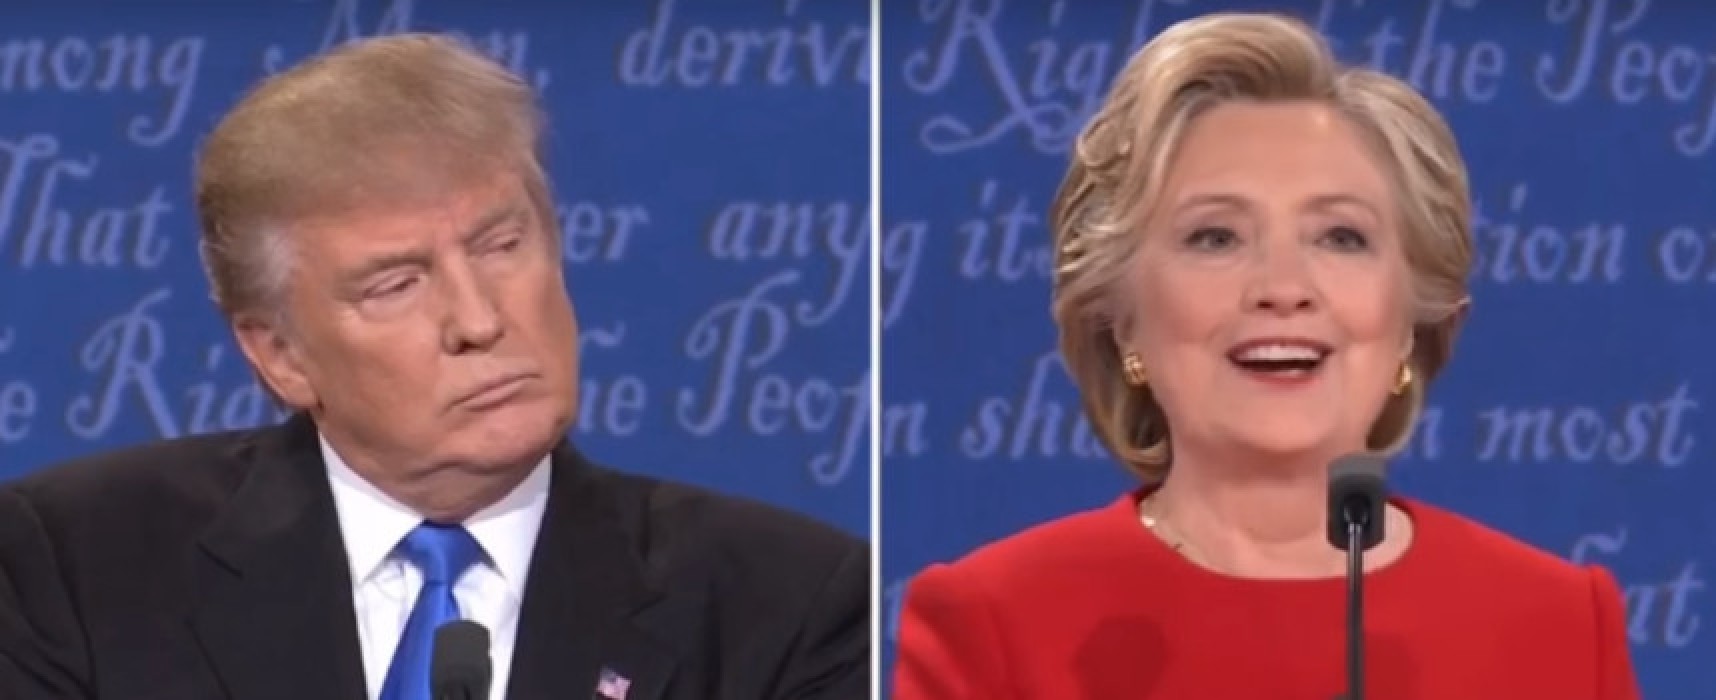 Trump e Clinton trasformati in due sposini pugliesi da un videomaker biscegliese / VIDEO